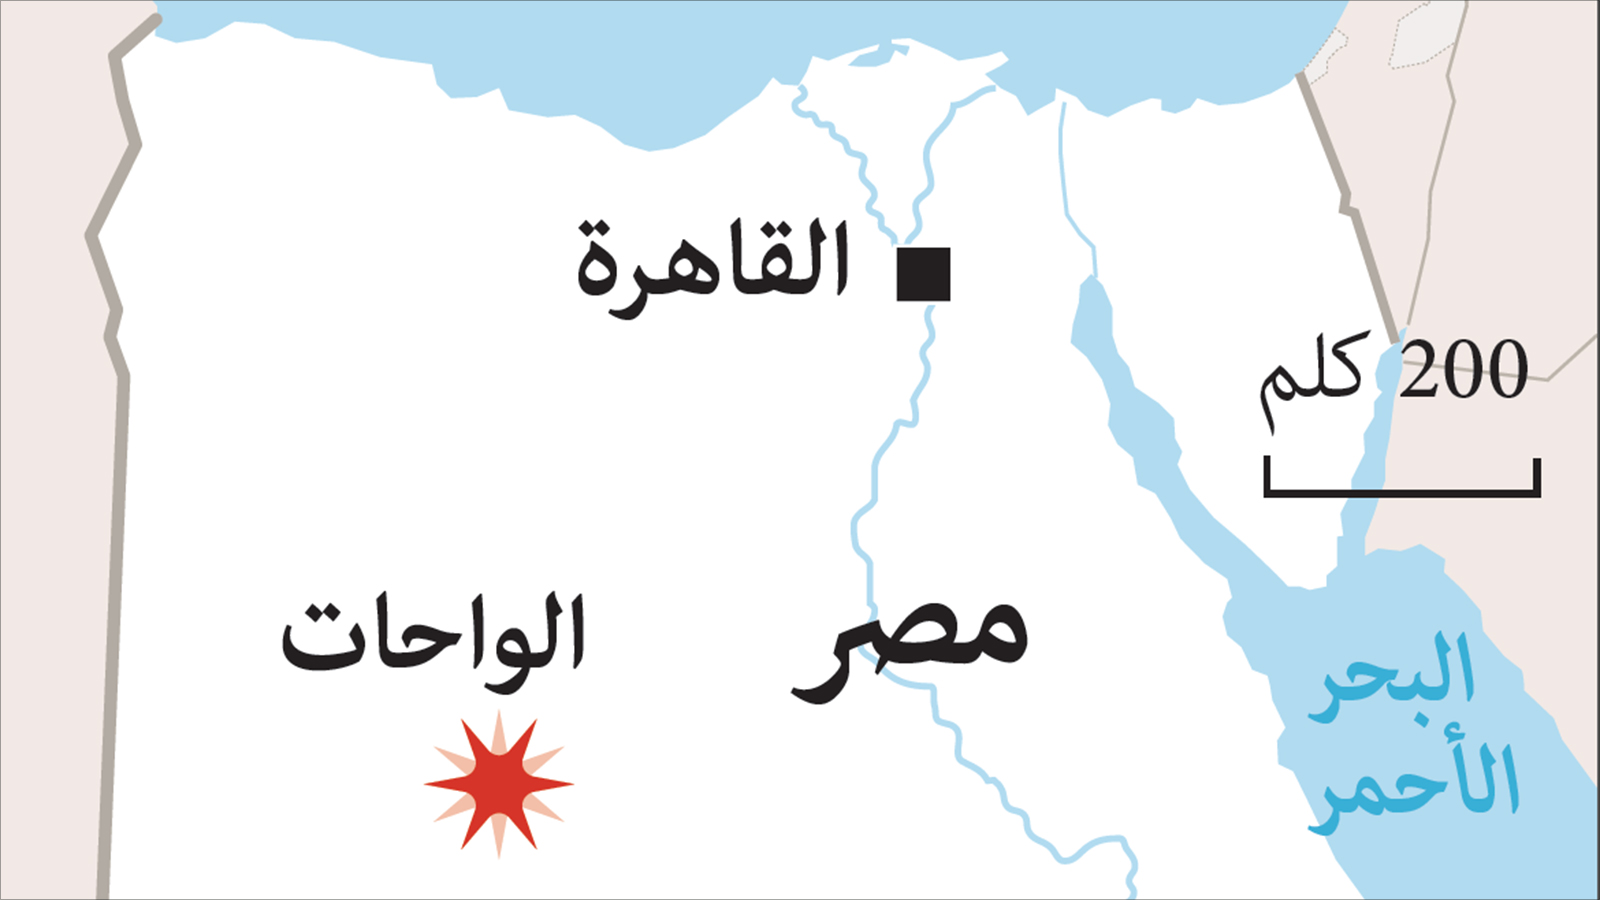 ‪خريطة مصر وتظهر فيها منطقة الواحات التي وقع الحادث بالقرب منها‬ (الفرنسية)